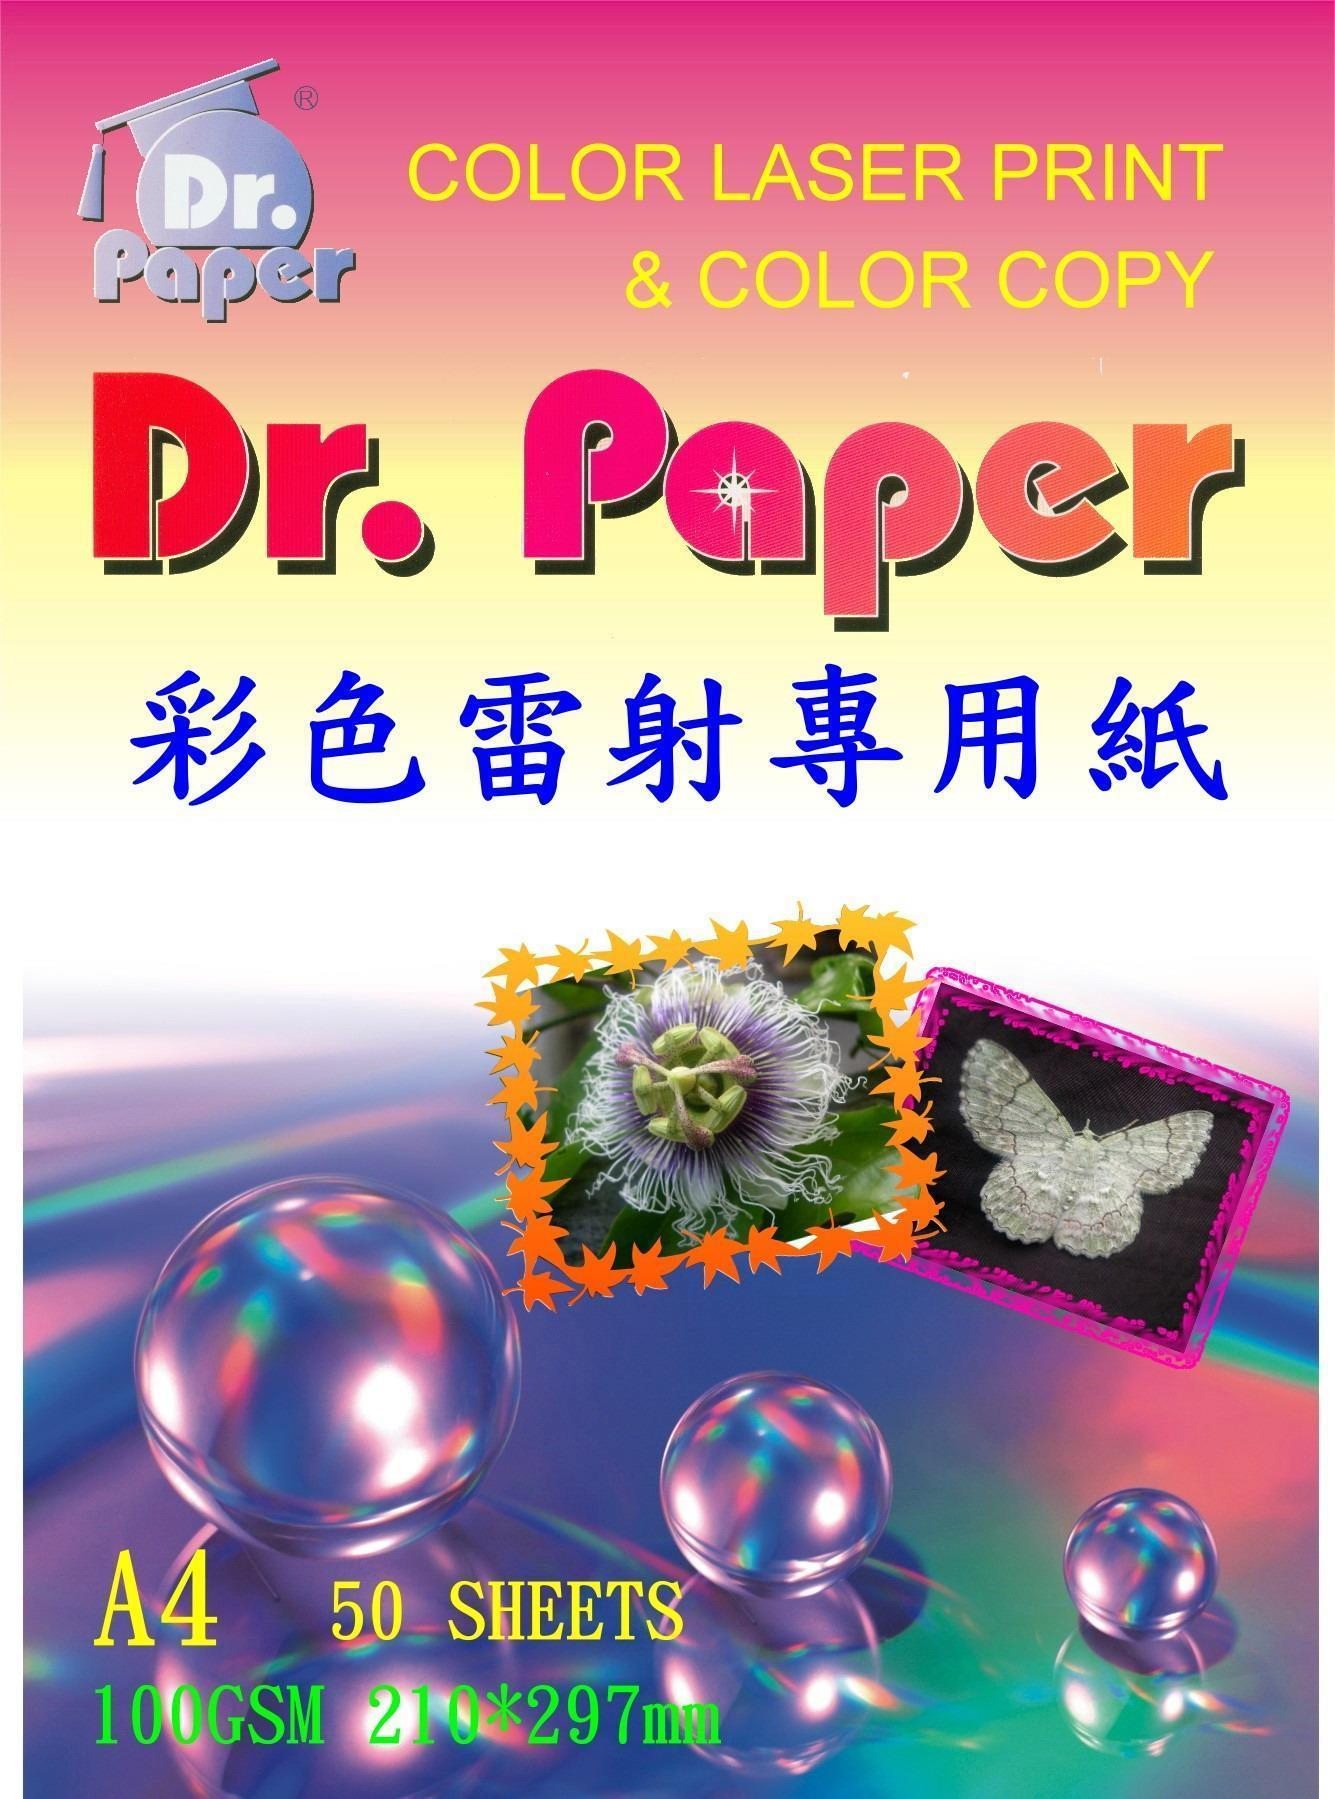 DR PAPER 彩噴/彩雷系列產品